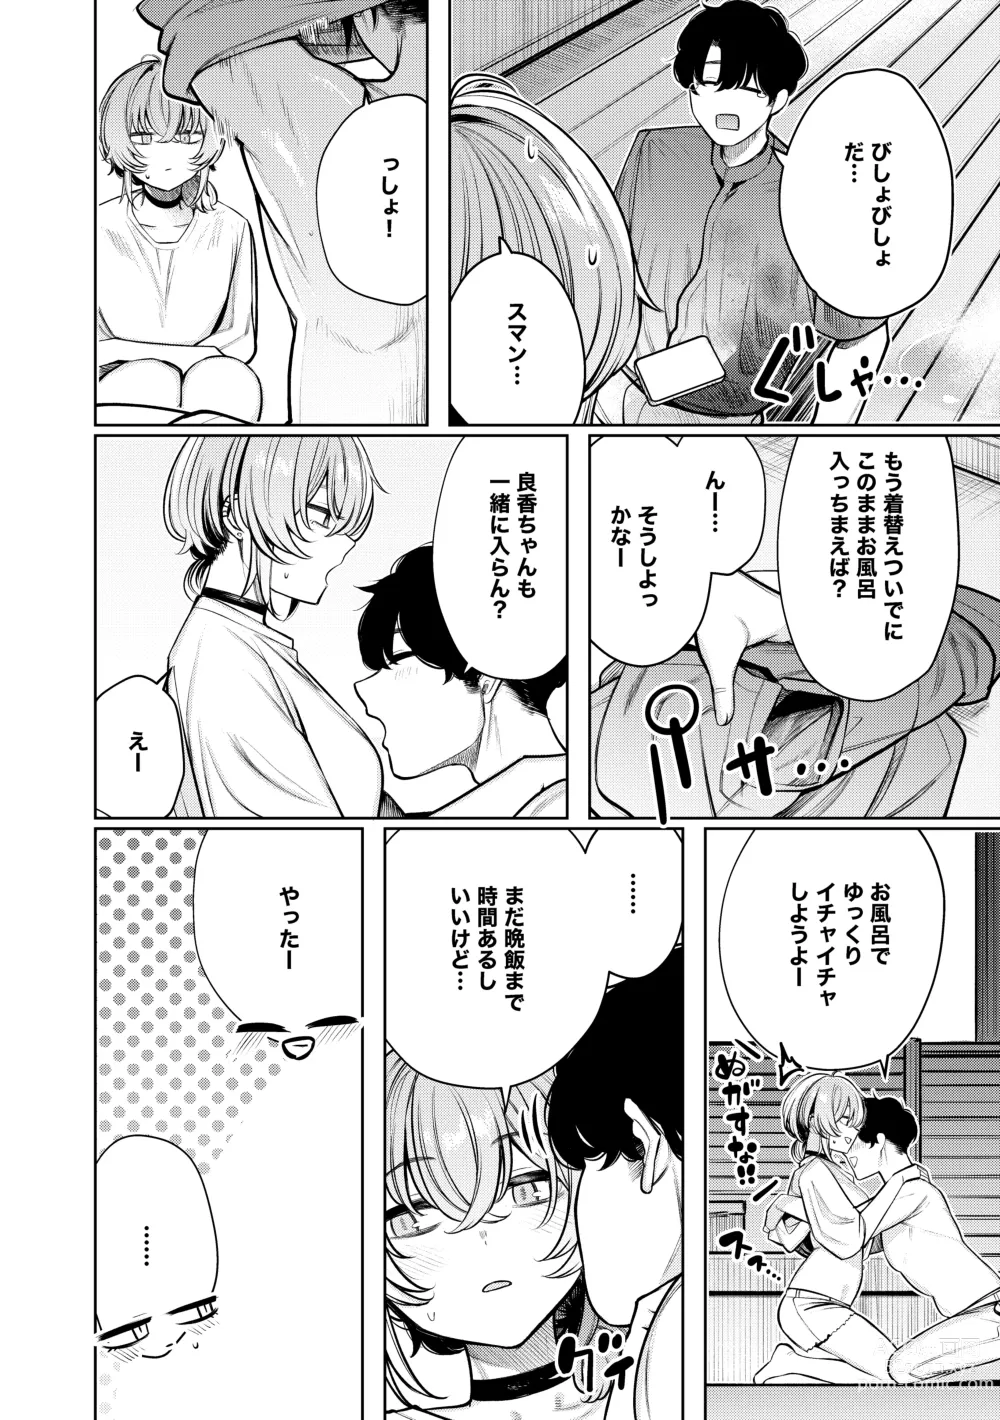 Page 10 of doujinshi Furyouppoi Kanojo to Daradara Hamedori Shitai.